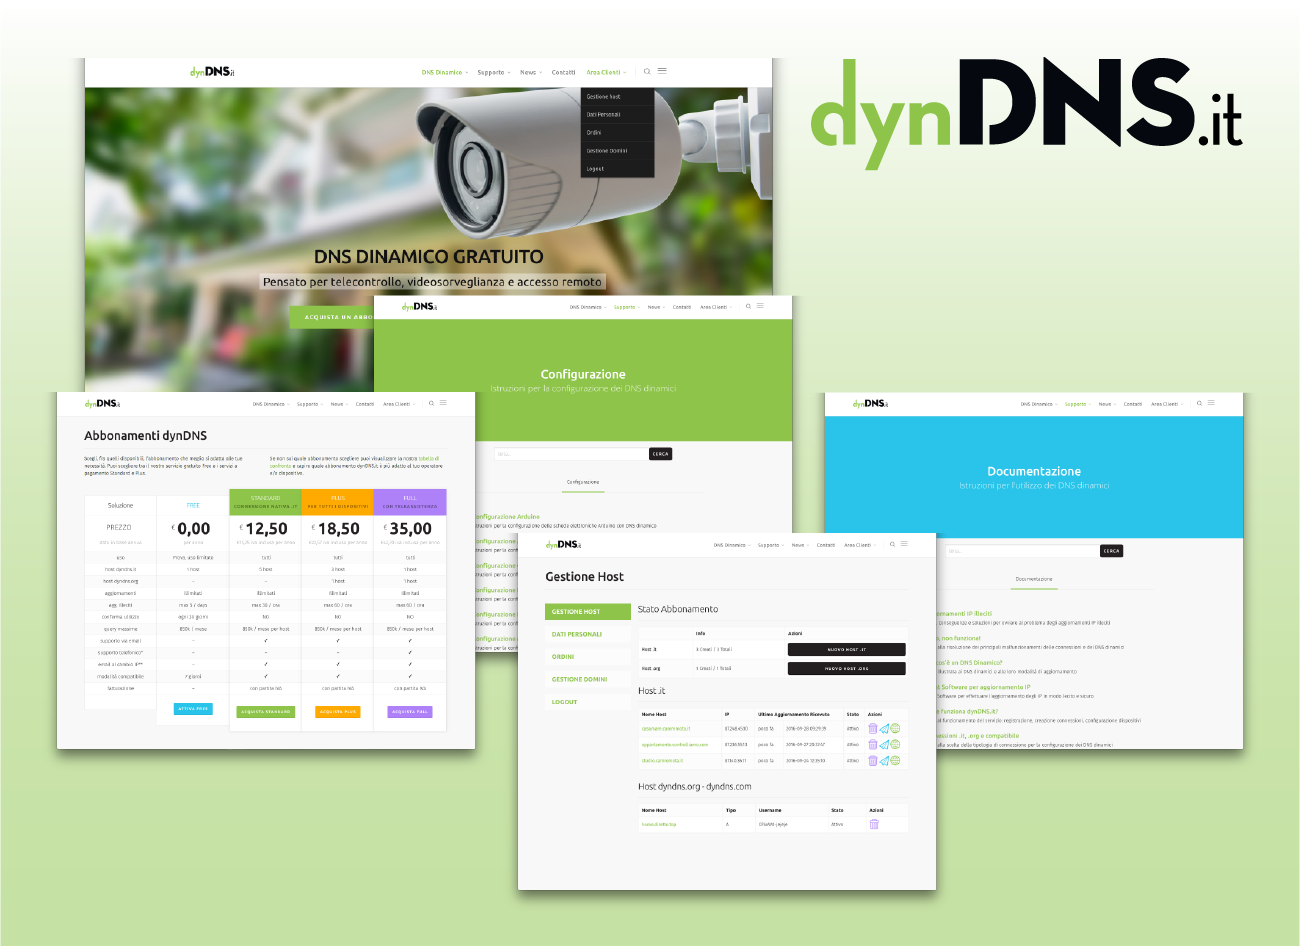 Online il nuovo sito dynDNS.it - dynDNS.it - DNS dinamico gratuito